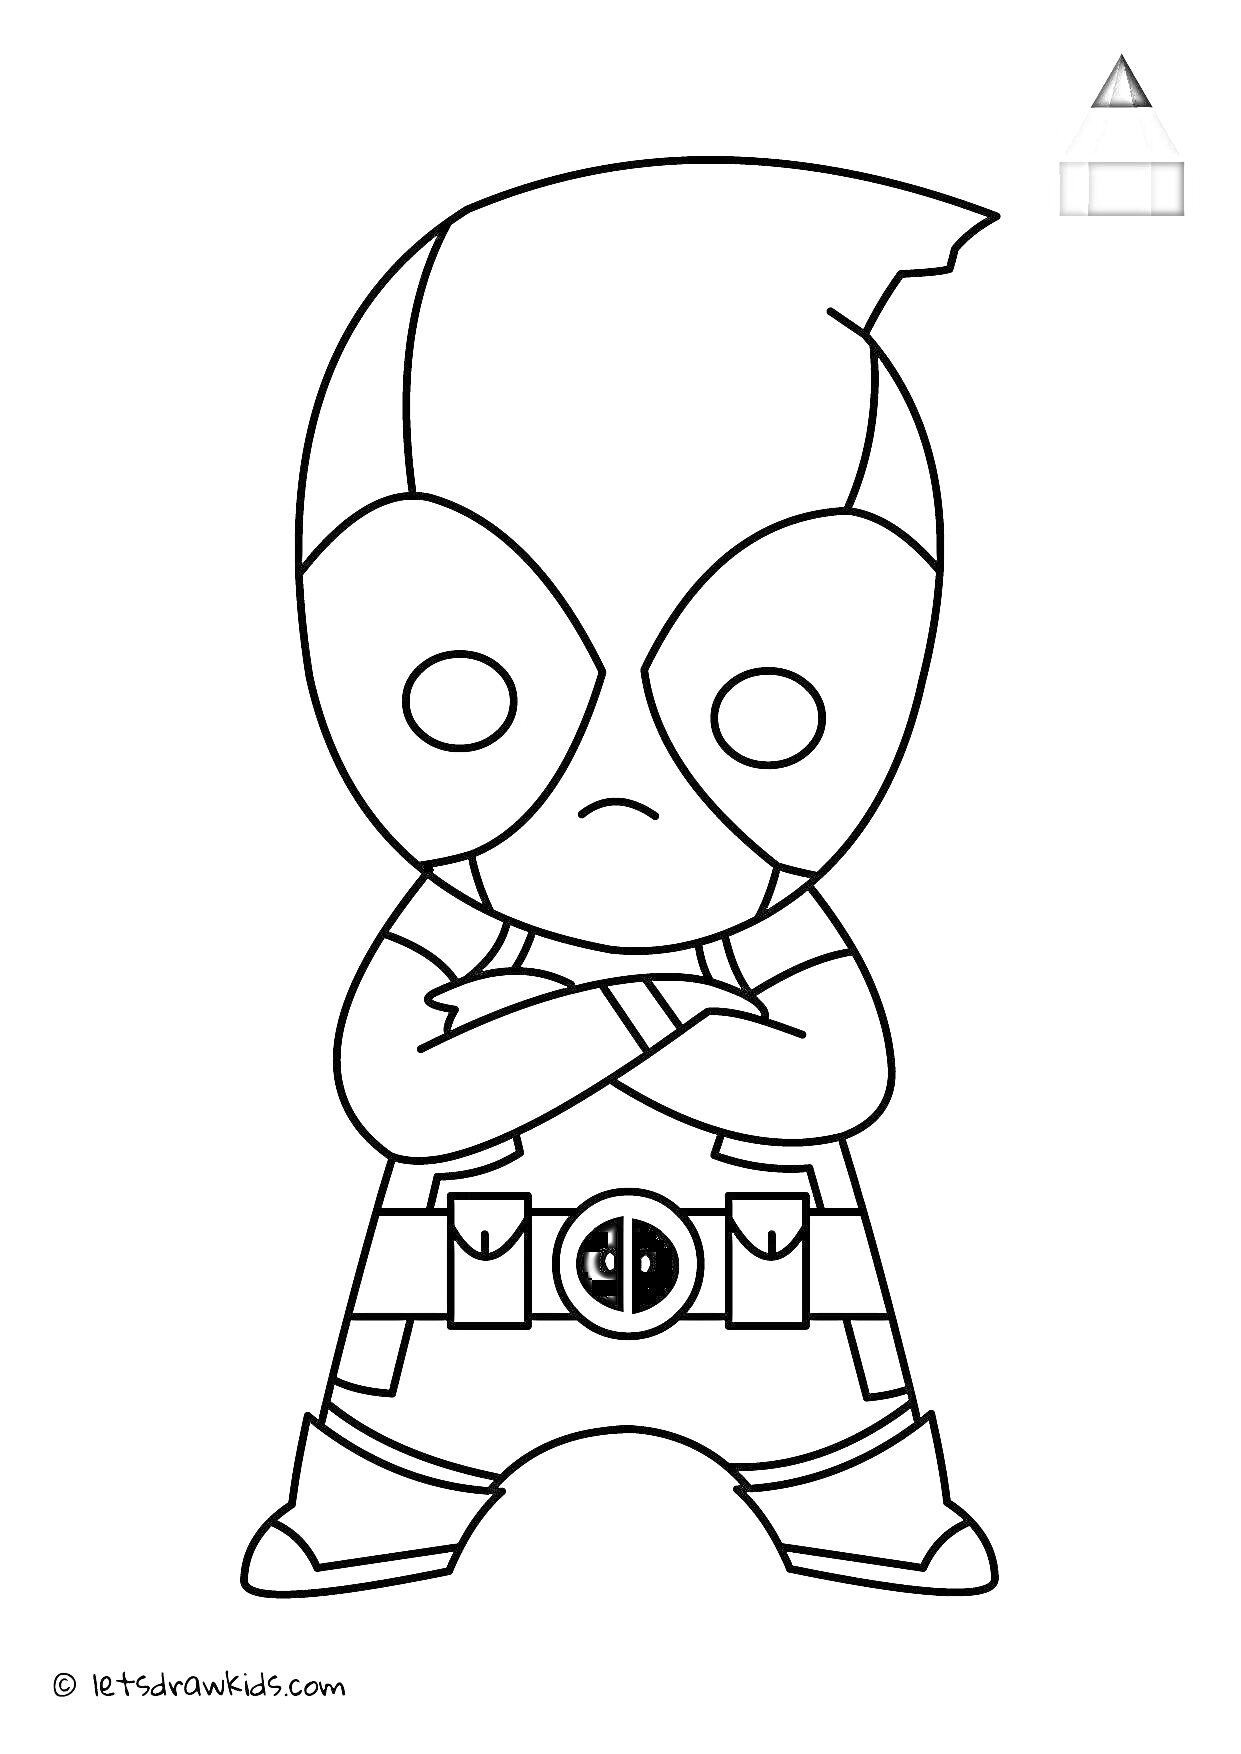 Раскраска Мини-супергерой с маской и перекрещёнными руками, с поясом с символом